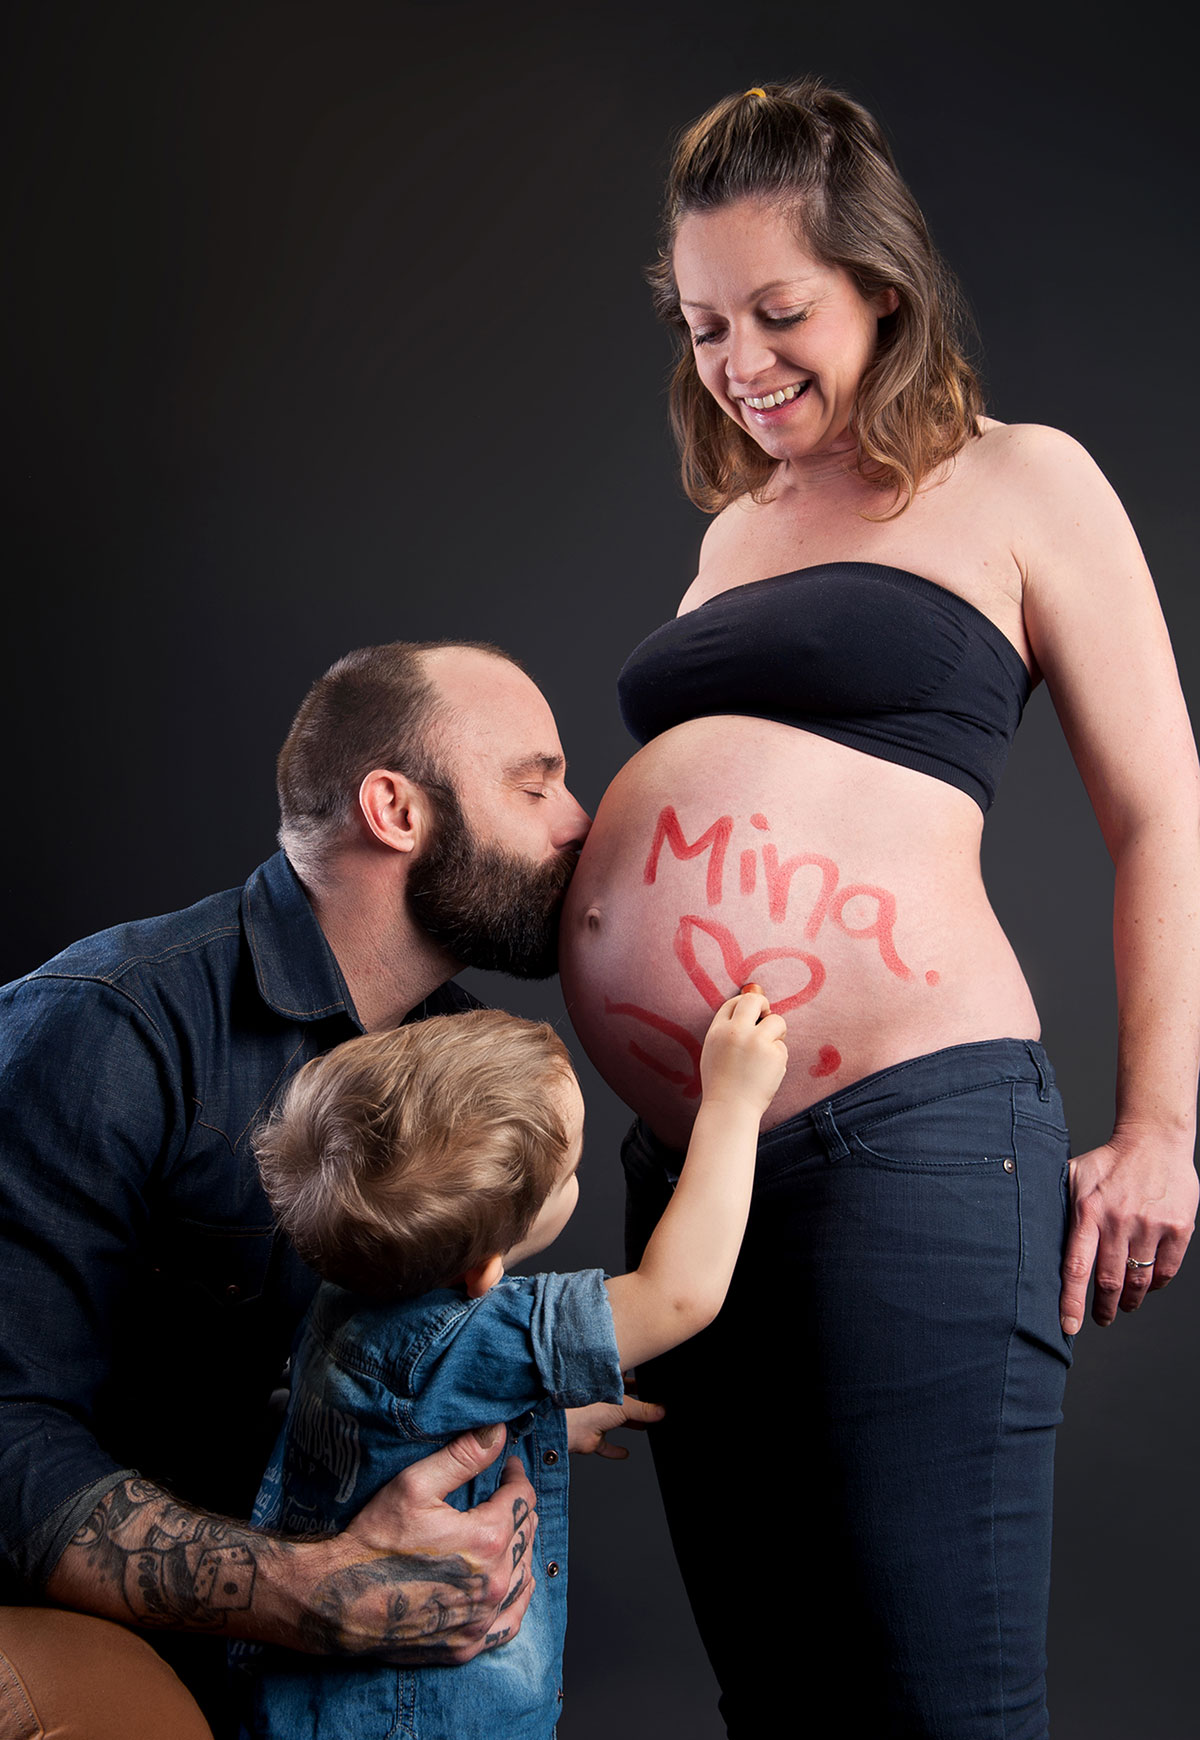 Schwangeren- und Familienbilder zum kleinen Preis machen lassen